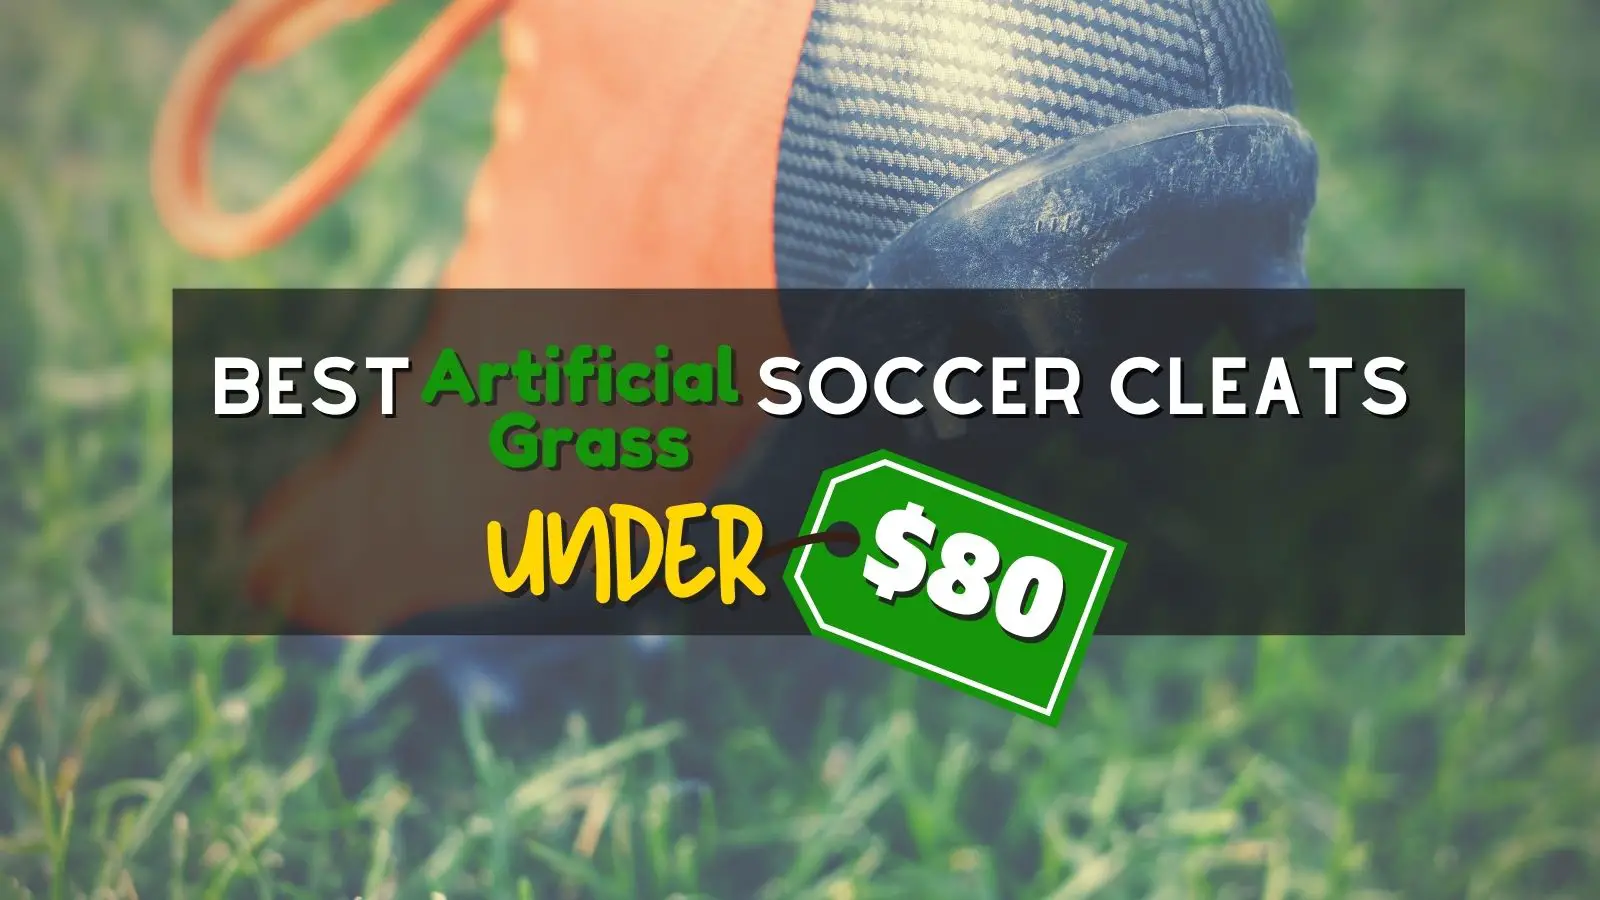 best artificial grass soccer cleats under $80 80 USD